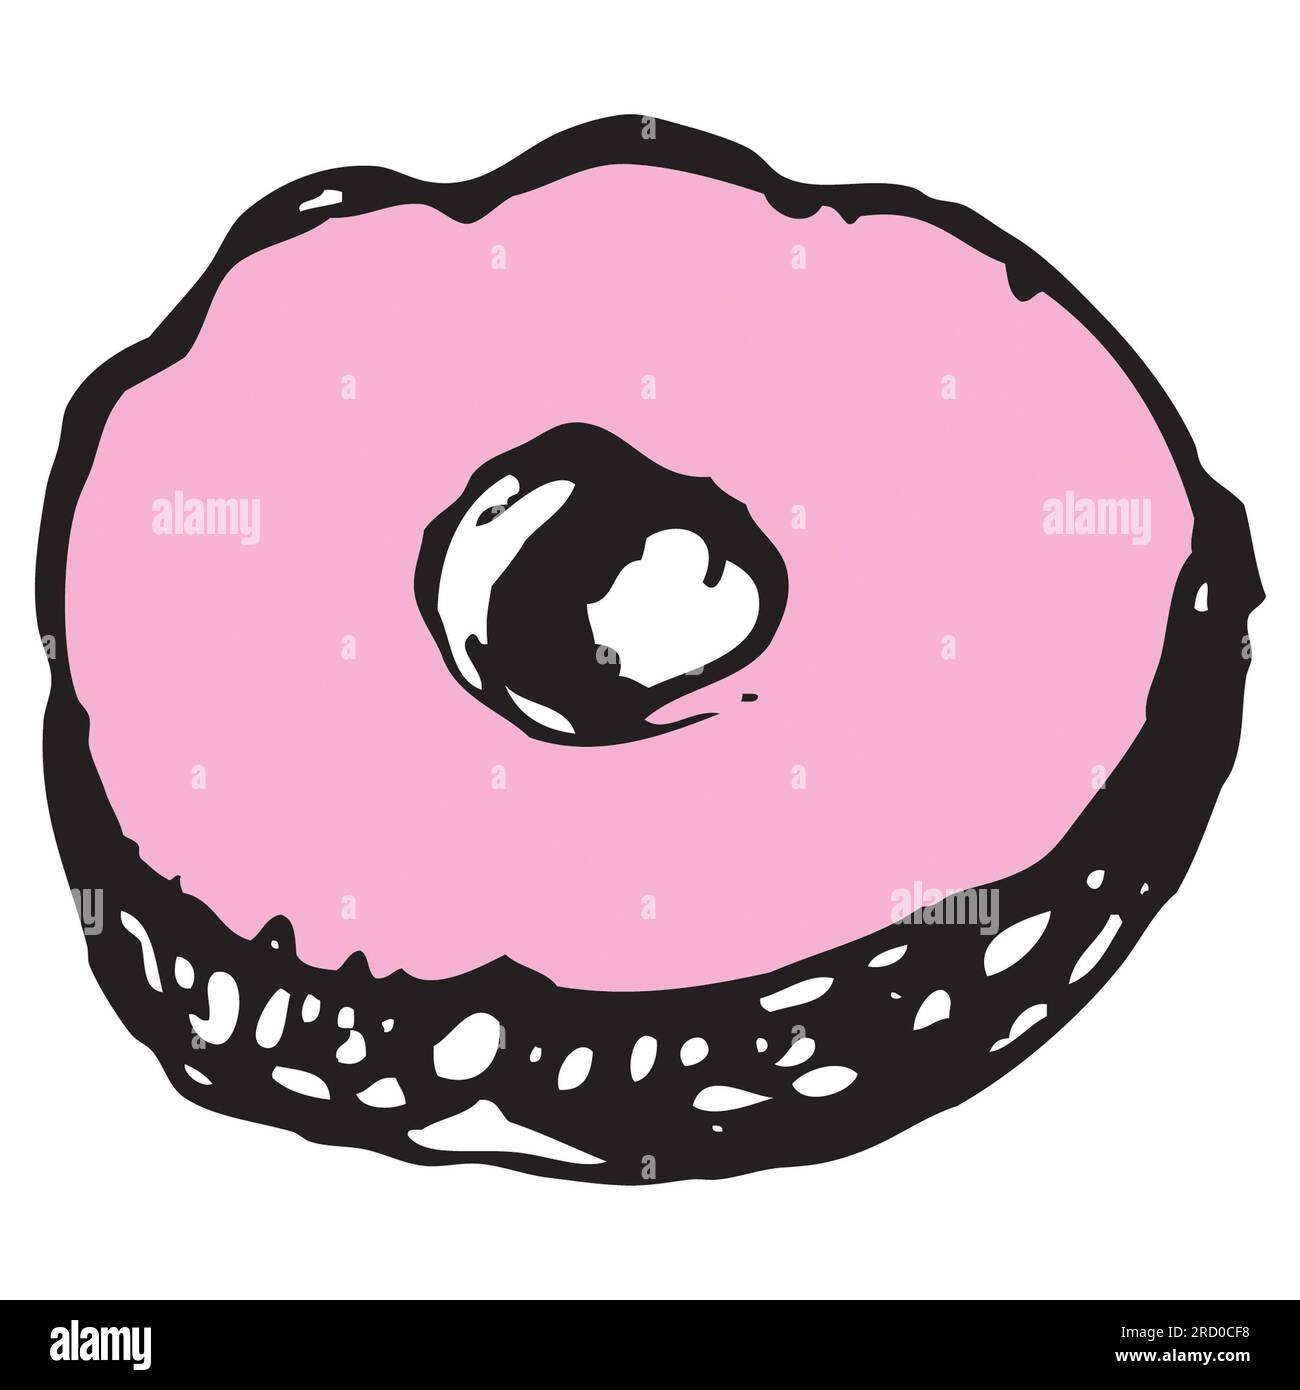 donut avec fondant rose sur le dessus, dessin à l'encre, vecteur, illustration, isoler Banque D'Images